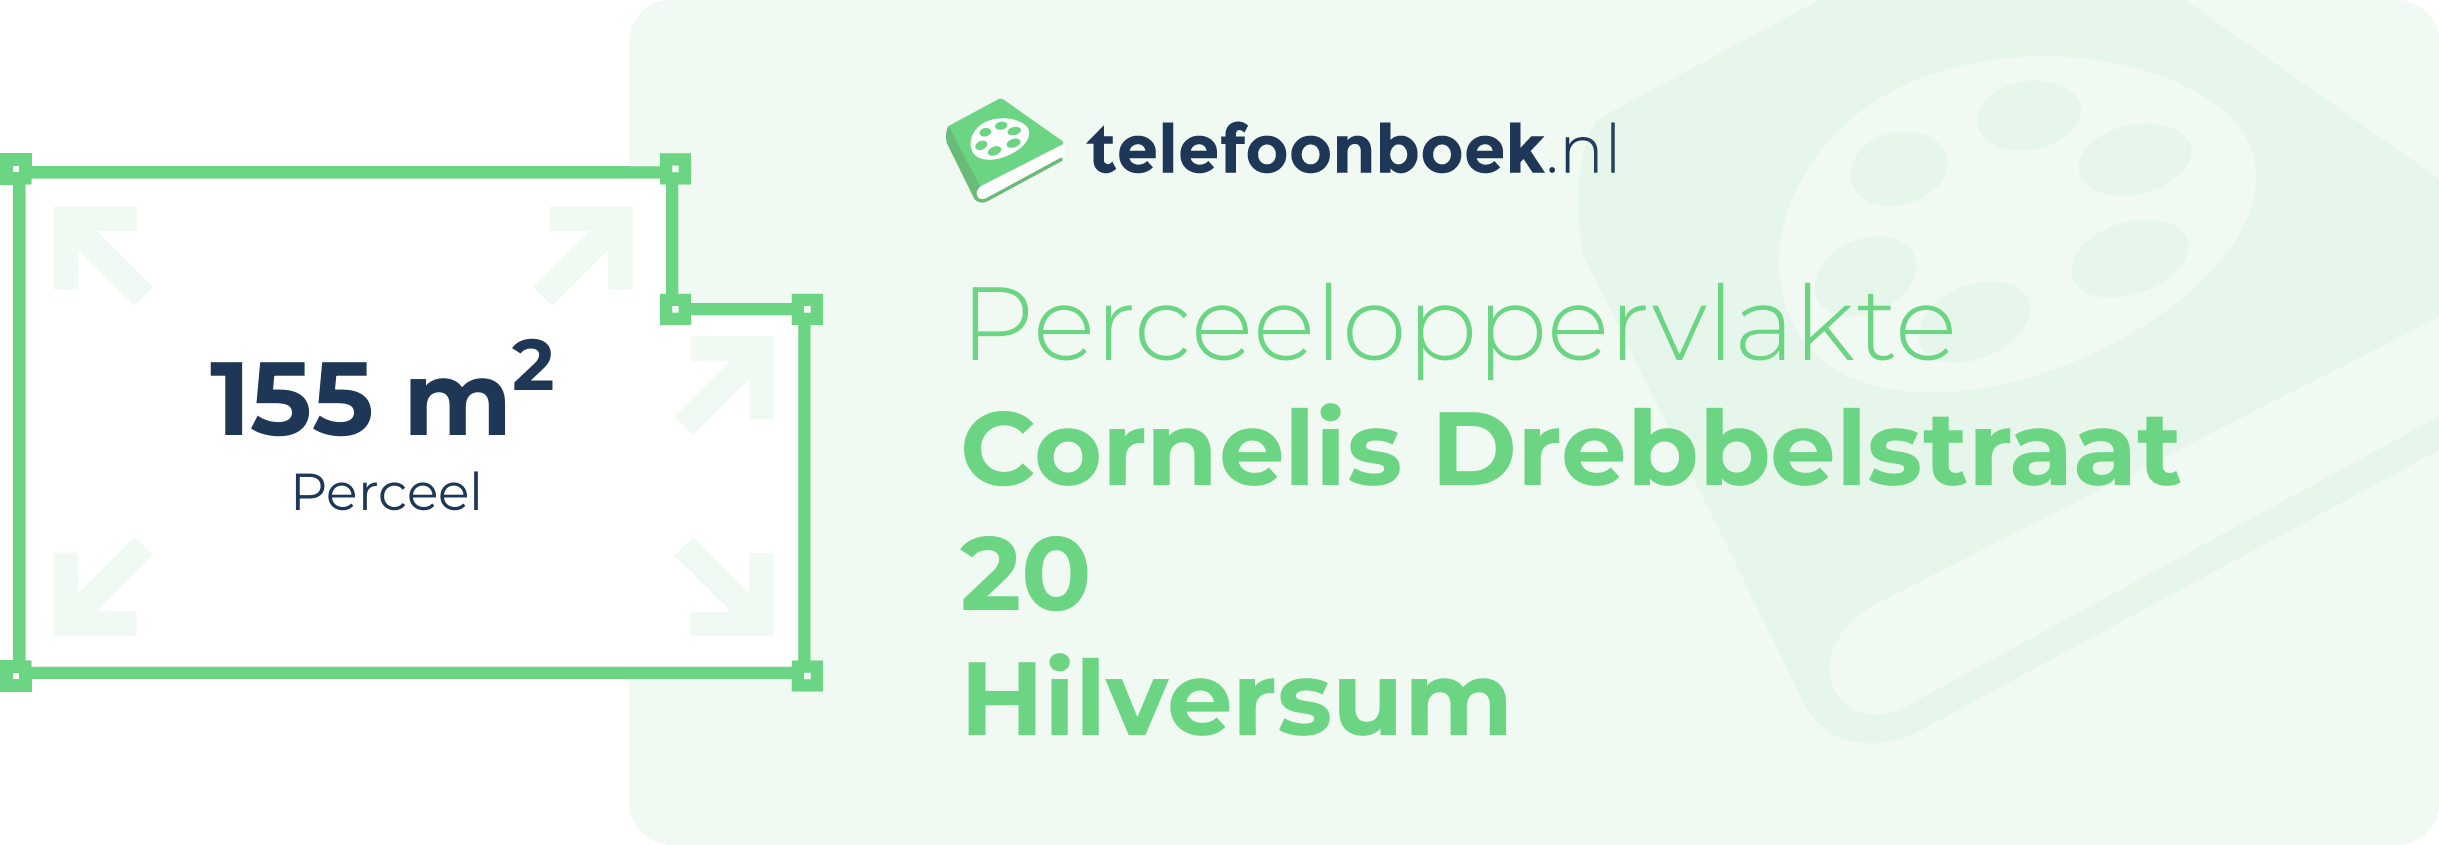 Perceeloppervlakte Cornelis Drebbelstraat 20 Hilversum